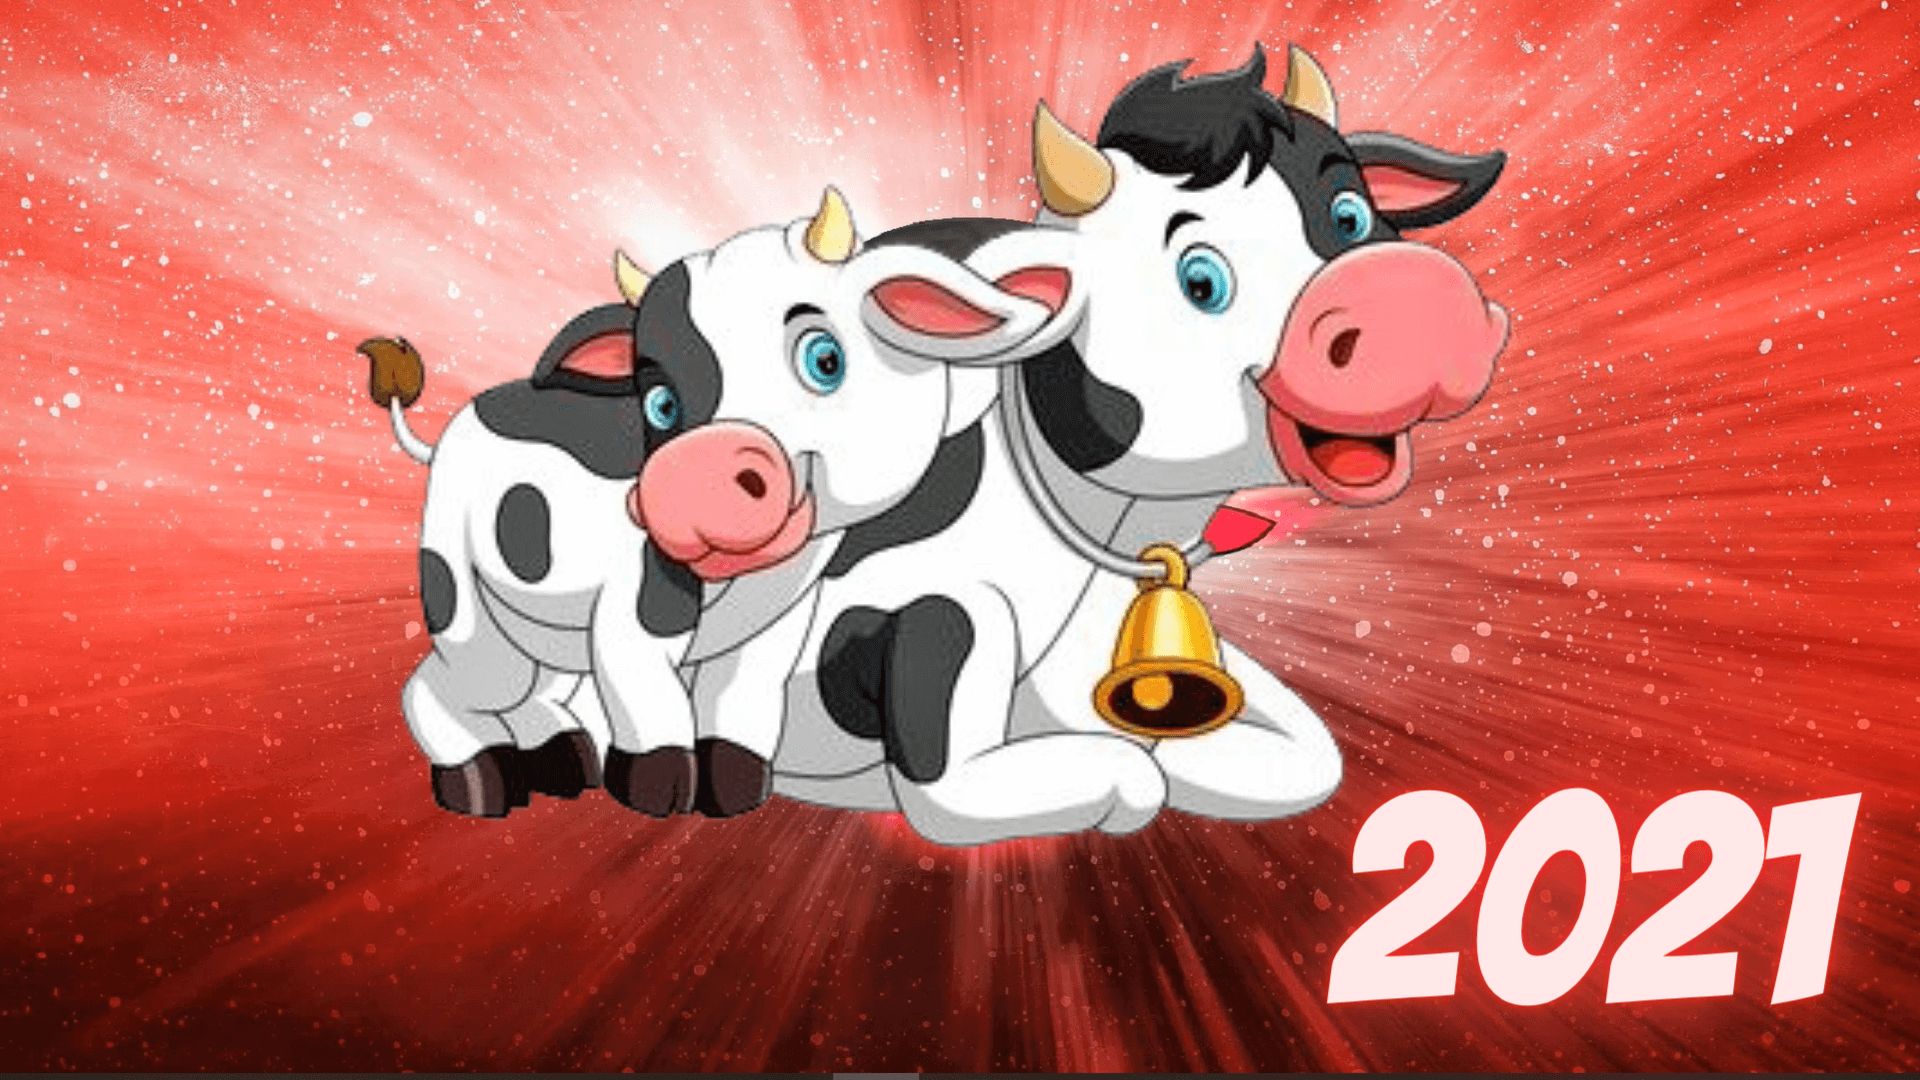 Заставки и картинки с быками на Новый год 2021